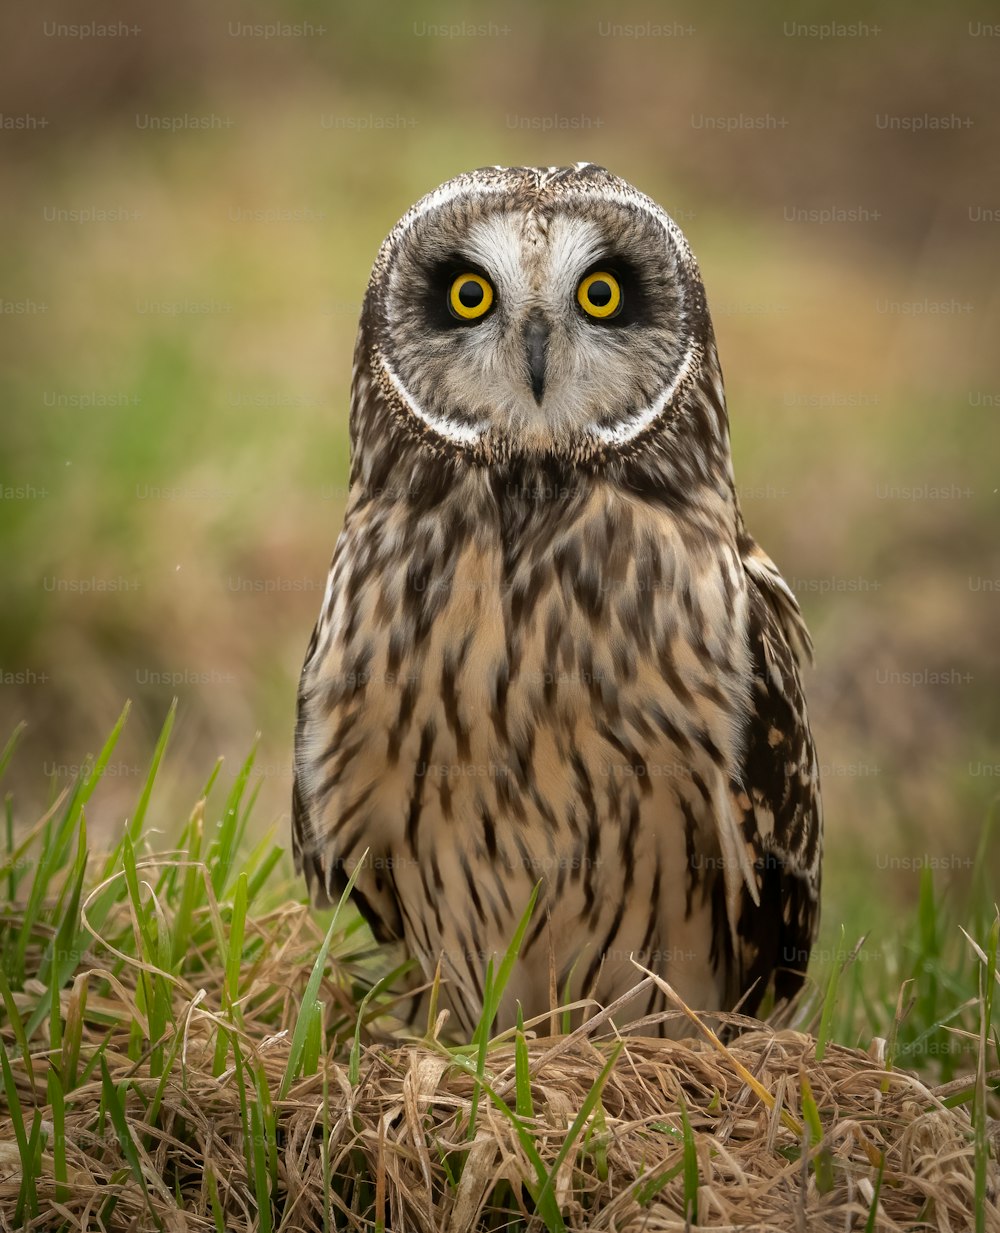 A short-eared owl portrait